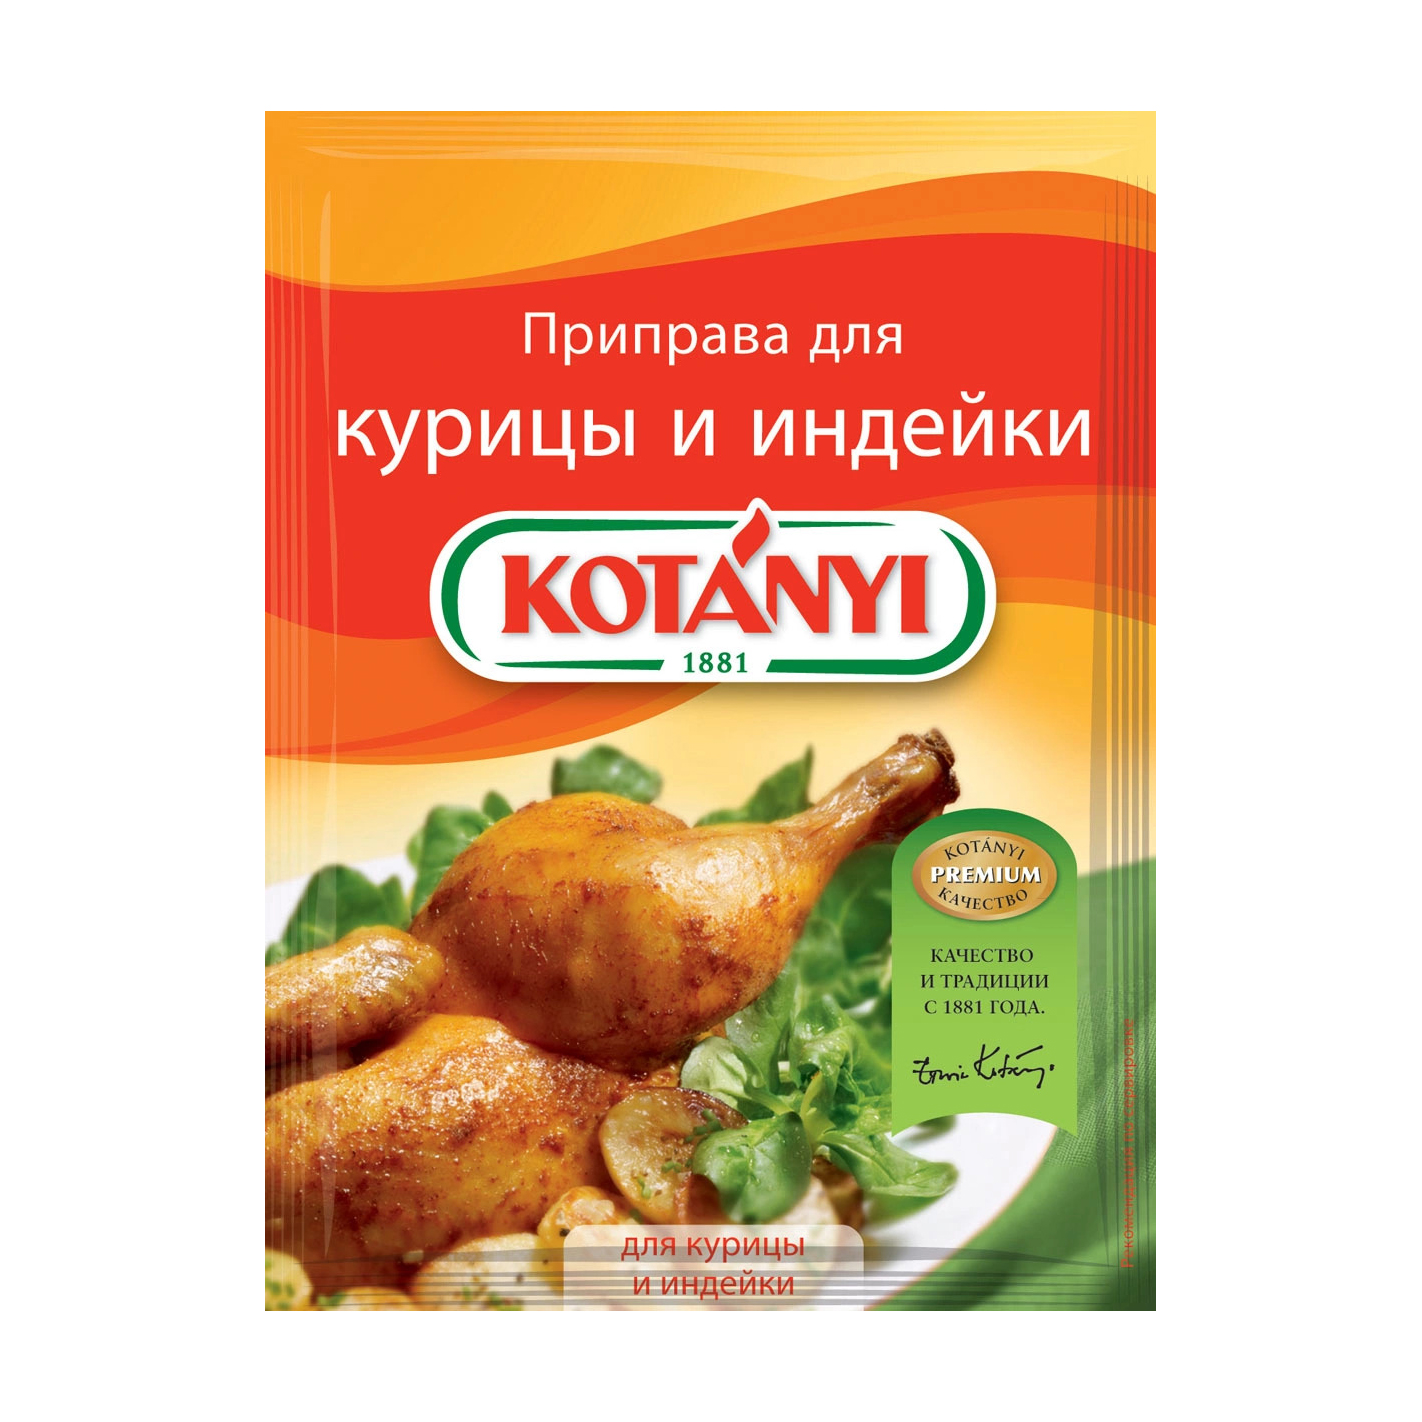 Приправа Kotanyi для курицы и индейки 30 г приправа metro chef для курицы 800 гр